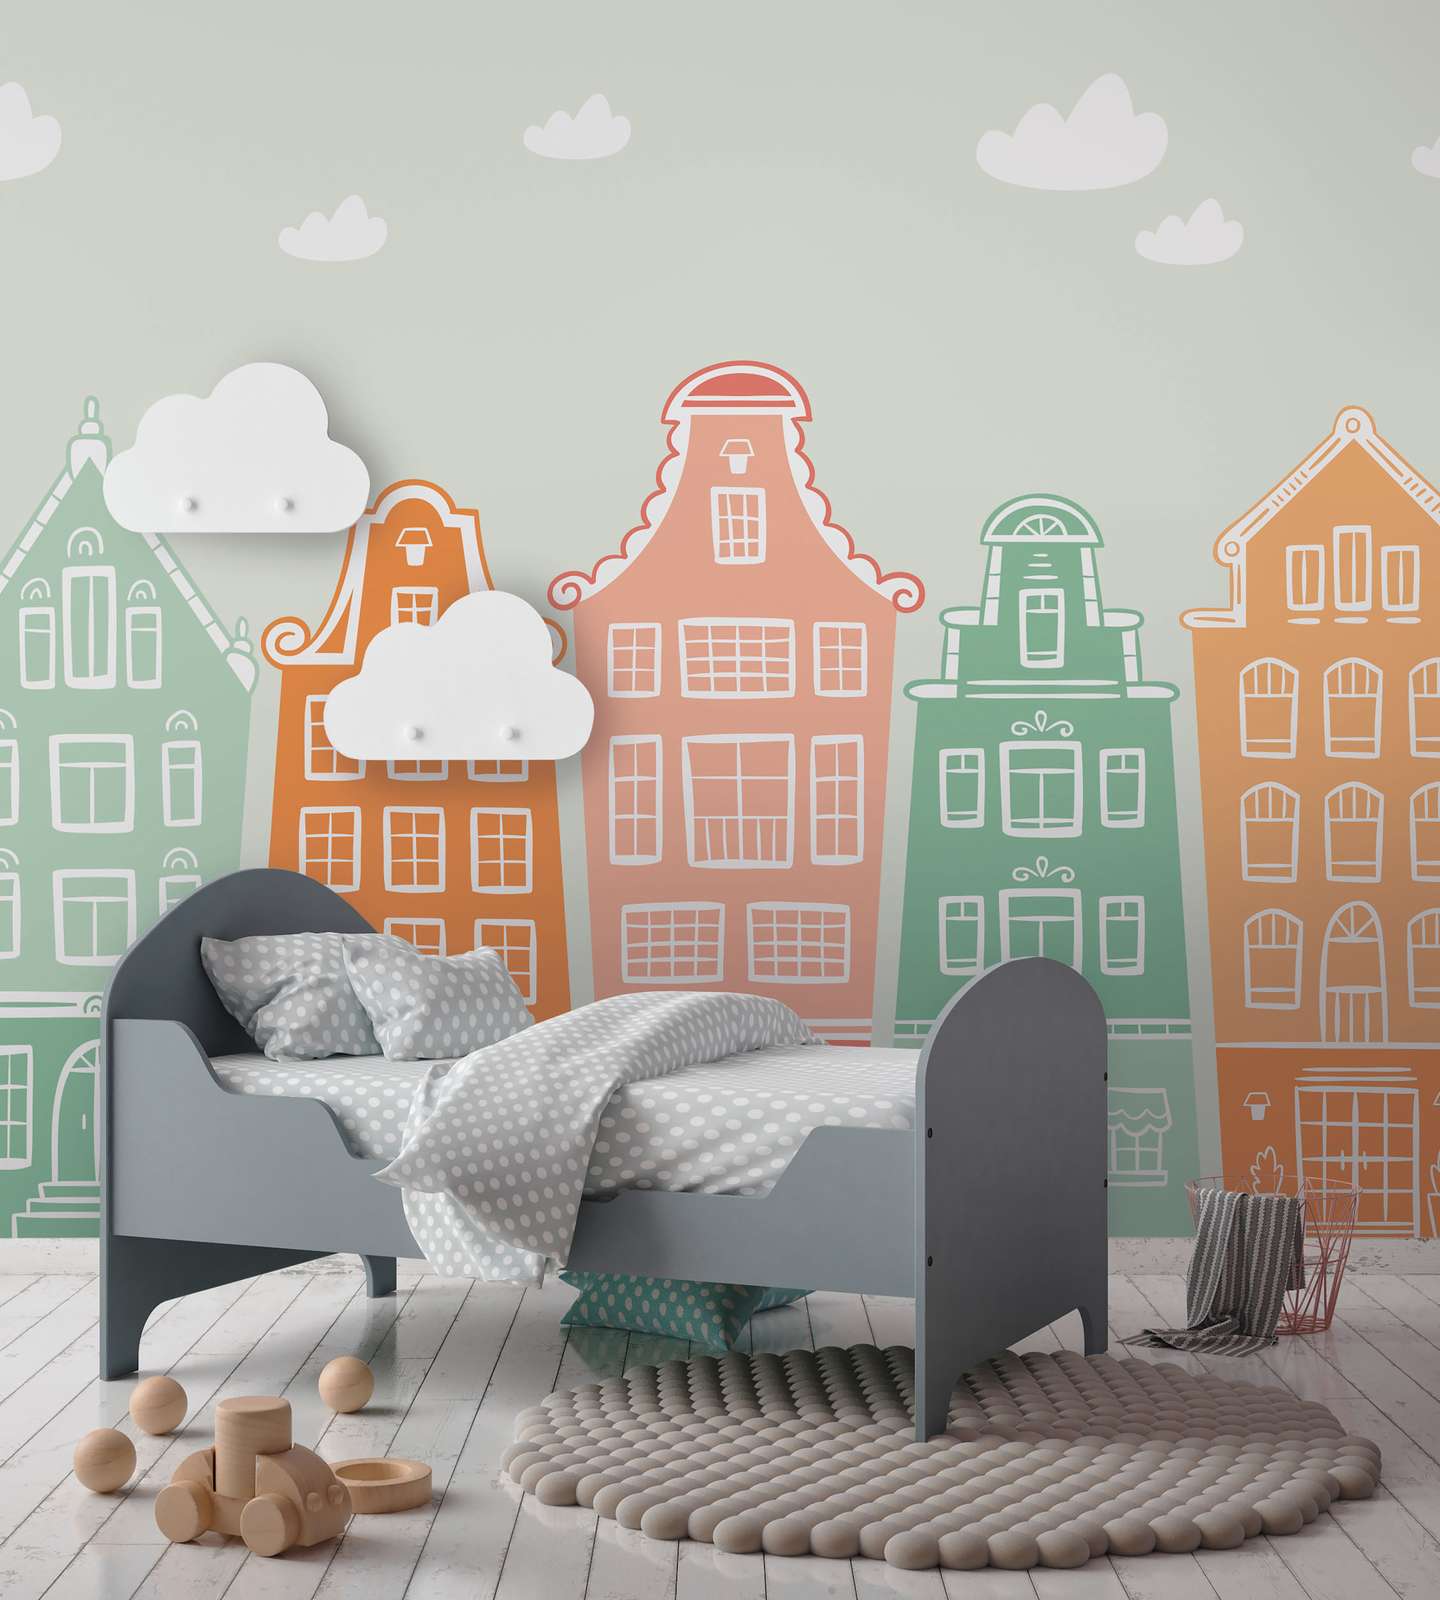             Fototapete Kinderzimmer Kleinstadt mit Häusern – Pastell, Bunt
        